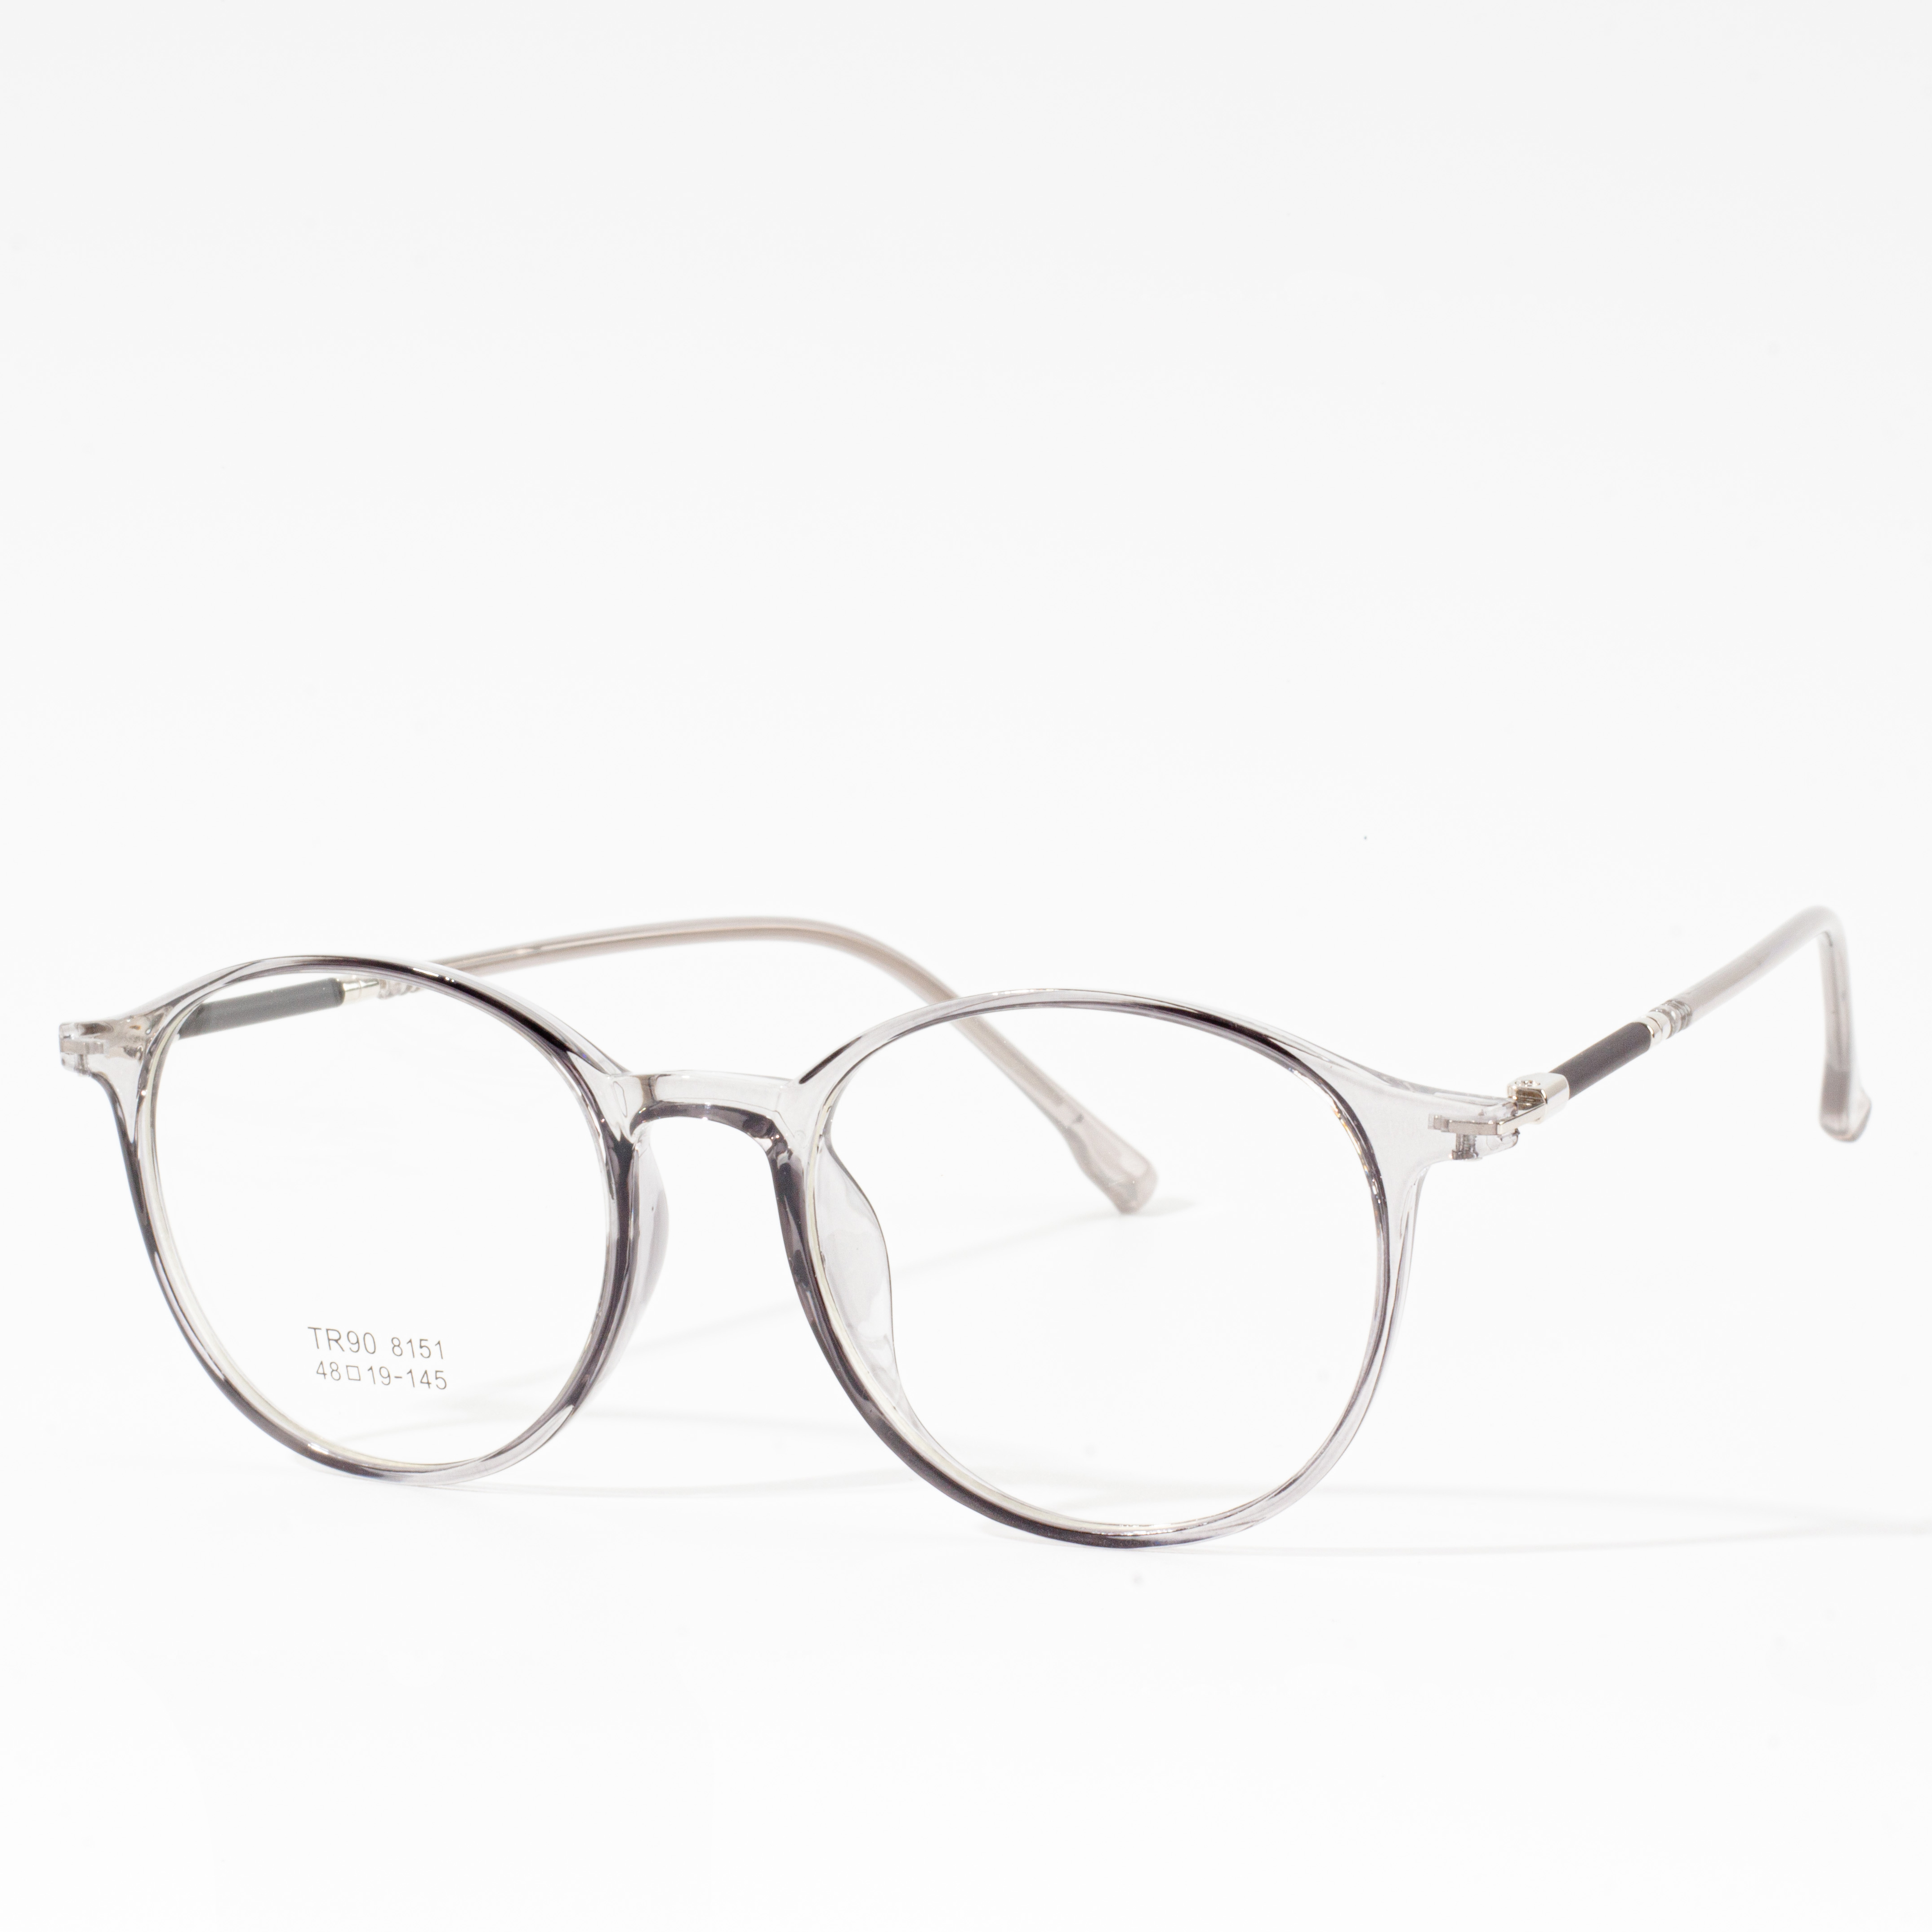 إطارات مصمم للرجال والنساء - Eyeglasses.com 广告 · https://www.eyeglasses.com/ (888) 896-3885 تسوق إطارات مصمم من أفضل ماركات النظارات العالمية بنصف أسعار البيع بالتجزئة اليوم.